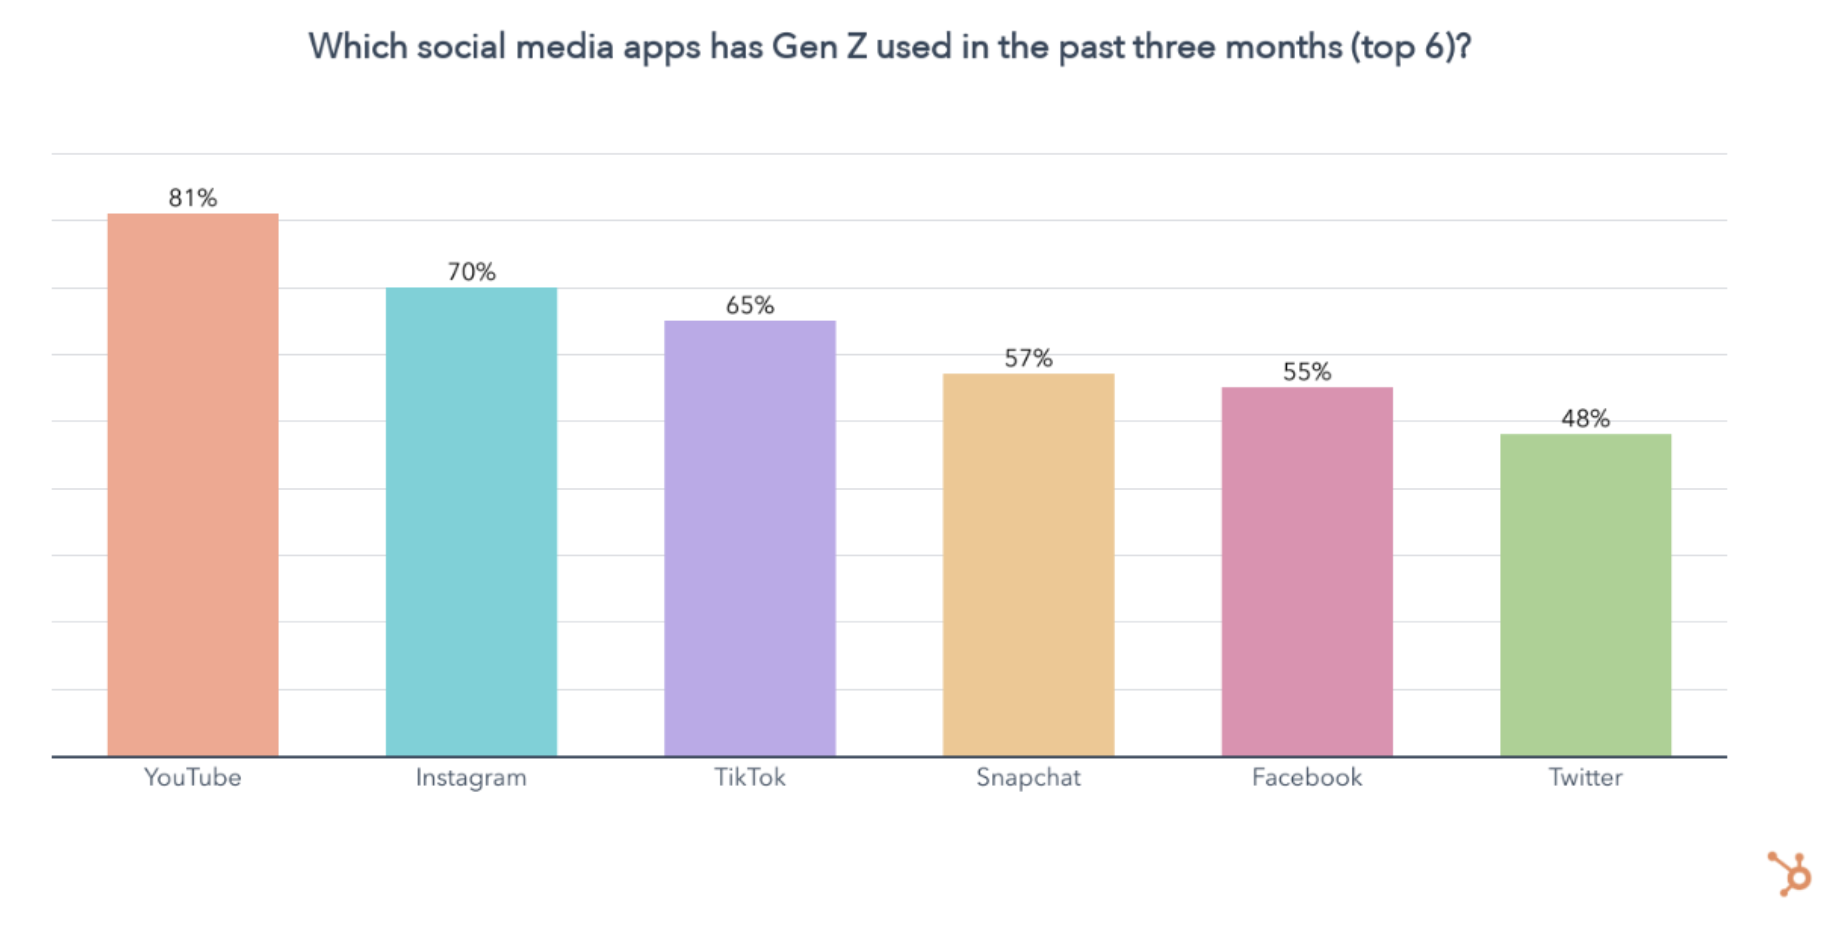 Gen Z द्वारा सर्वाधिक उपयोग किए जाने वाले सोशल मीडिया ऐप के रूप में YouTube को दर्शाने वाला ग्राफ़.